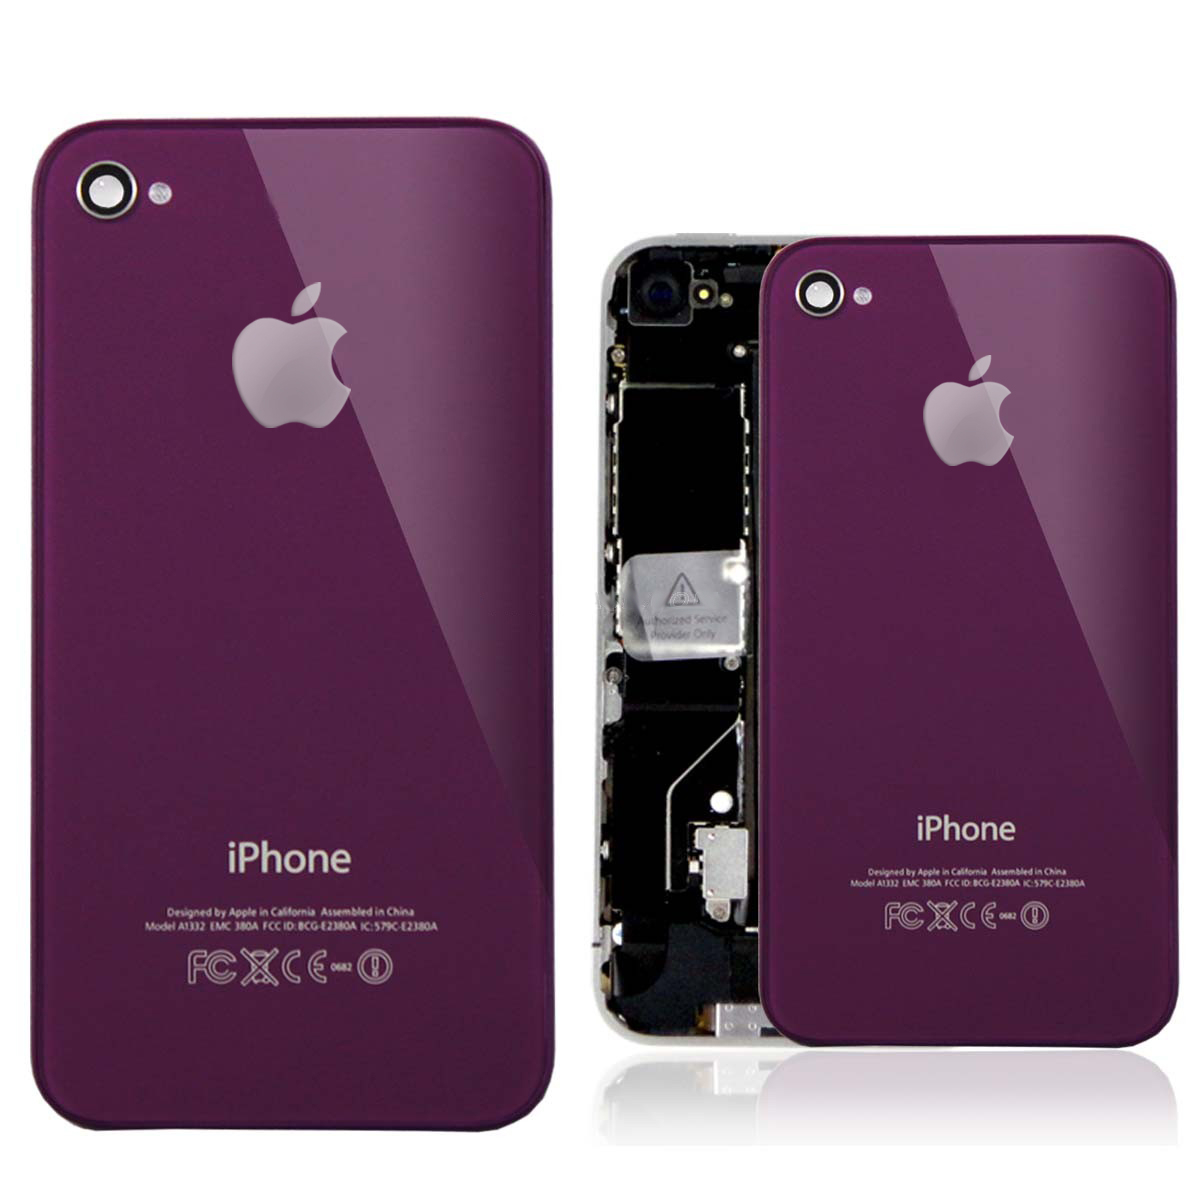 iPhone 4S Backcover - резервен заден капак за iPhone 4S (лилав)